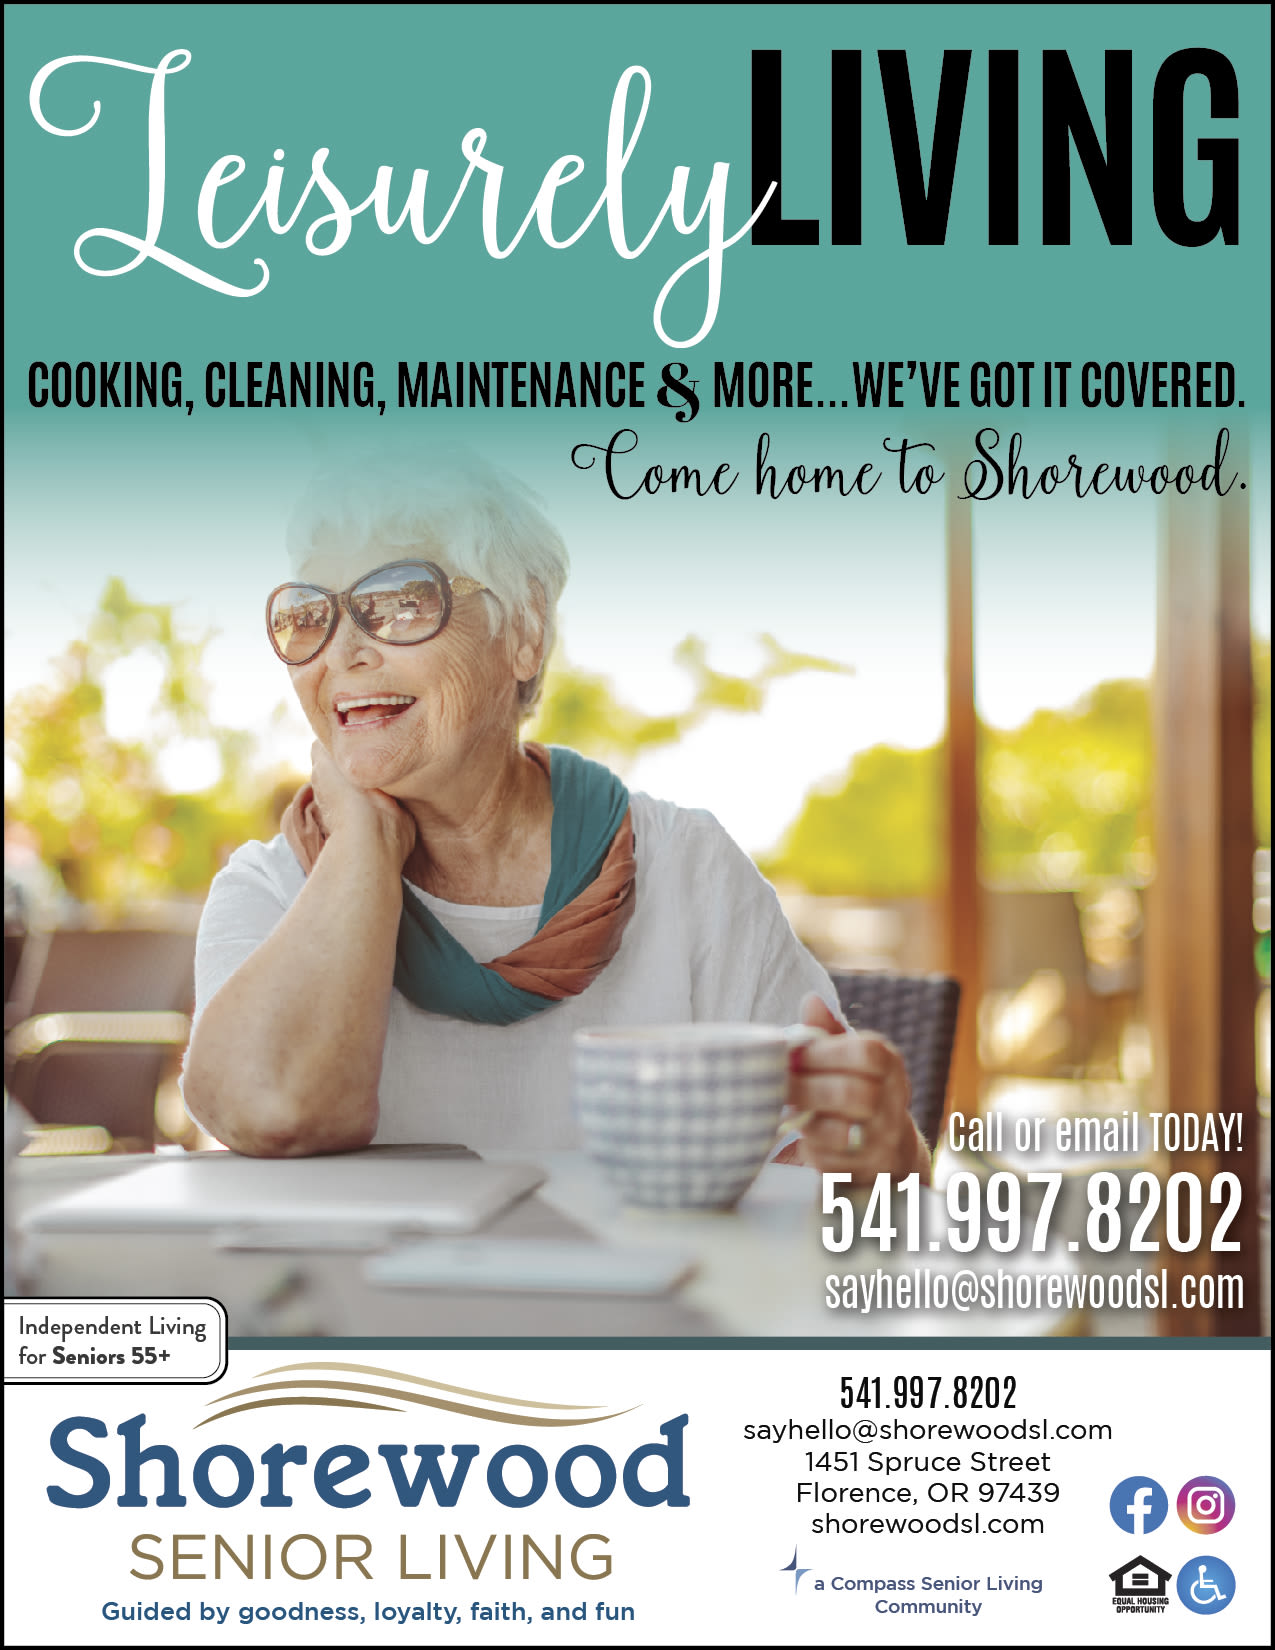 Leisurely Living Beautiful Woman Smiling at Shorewood Senior Living